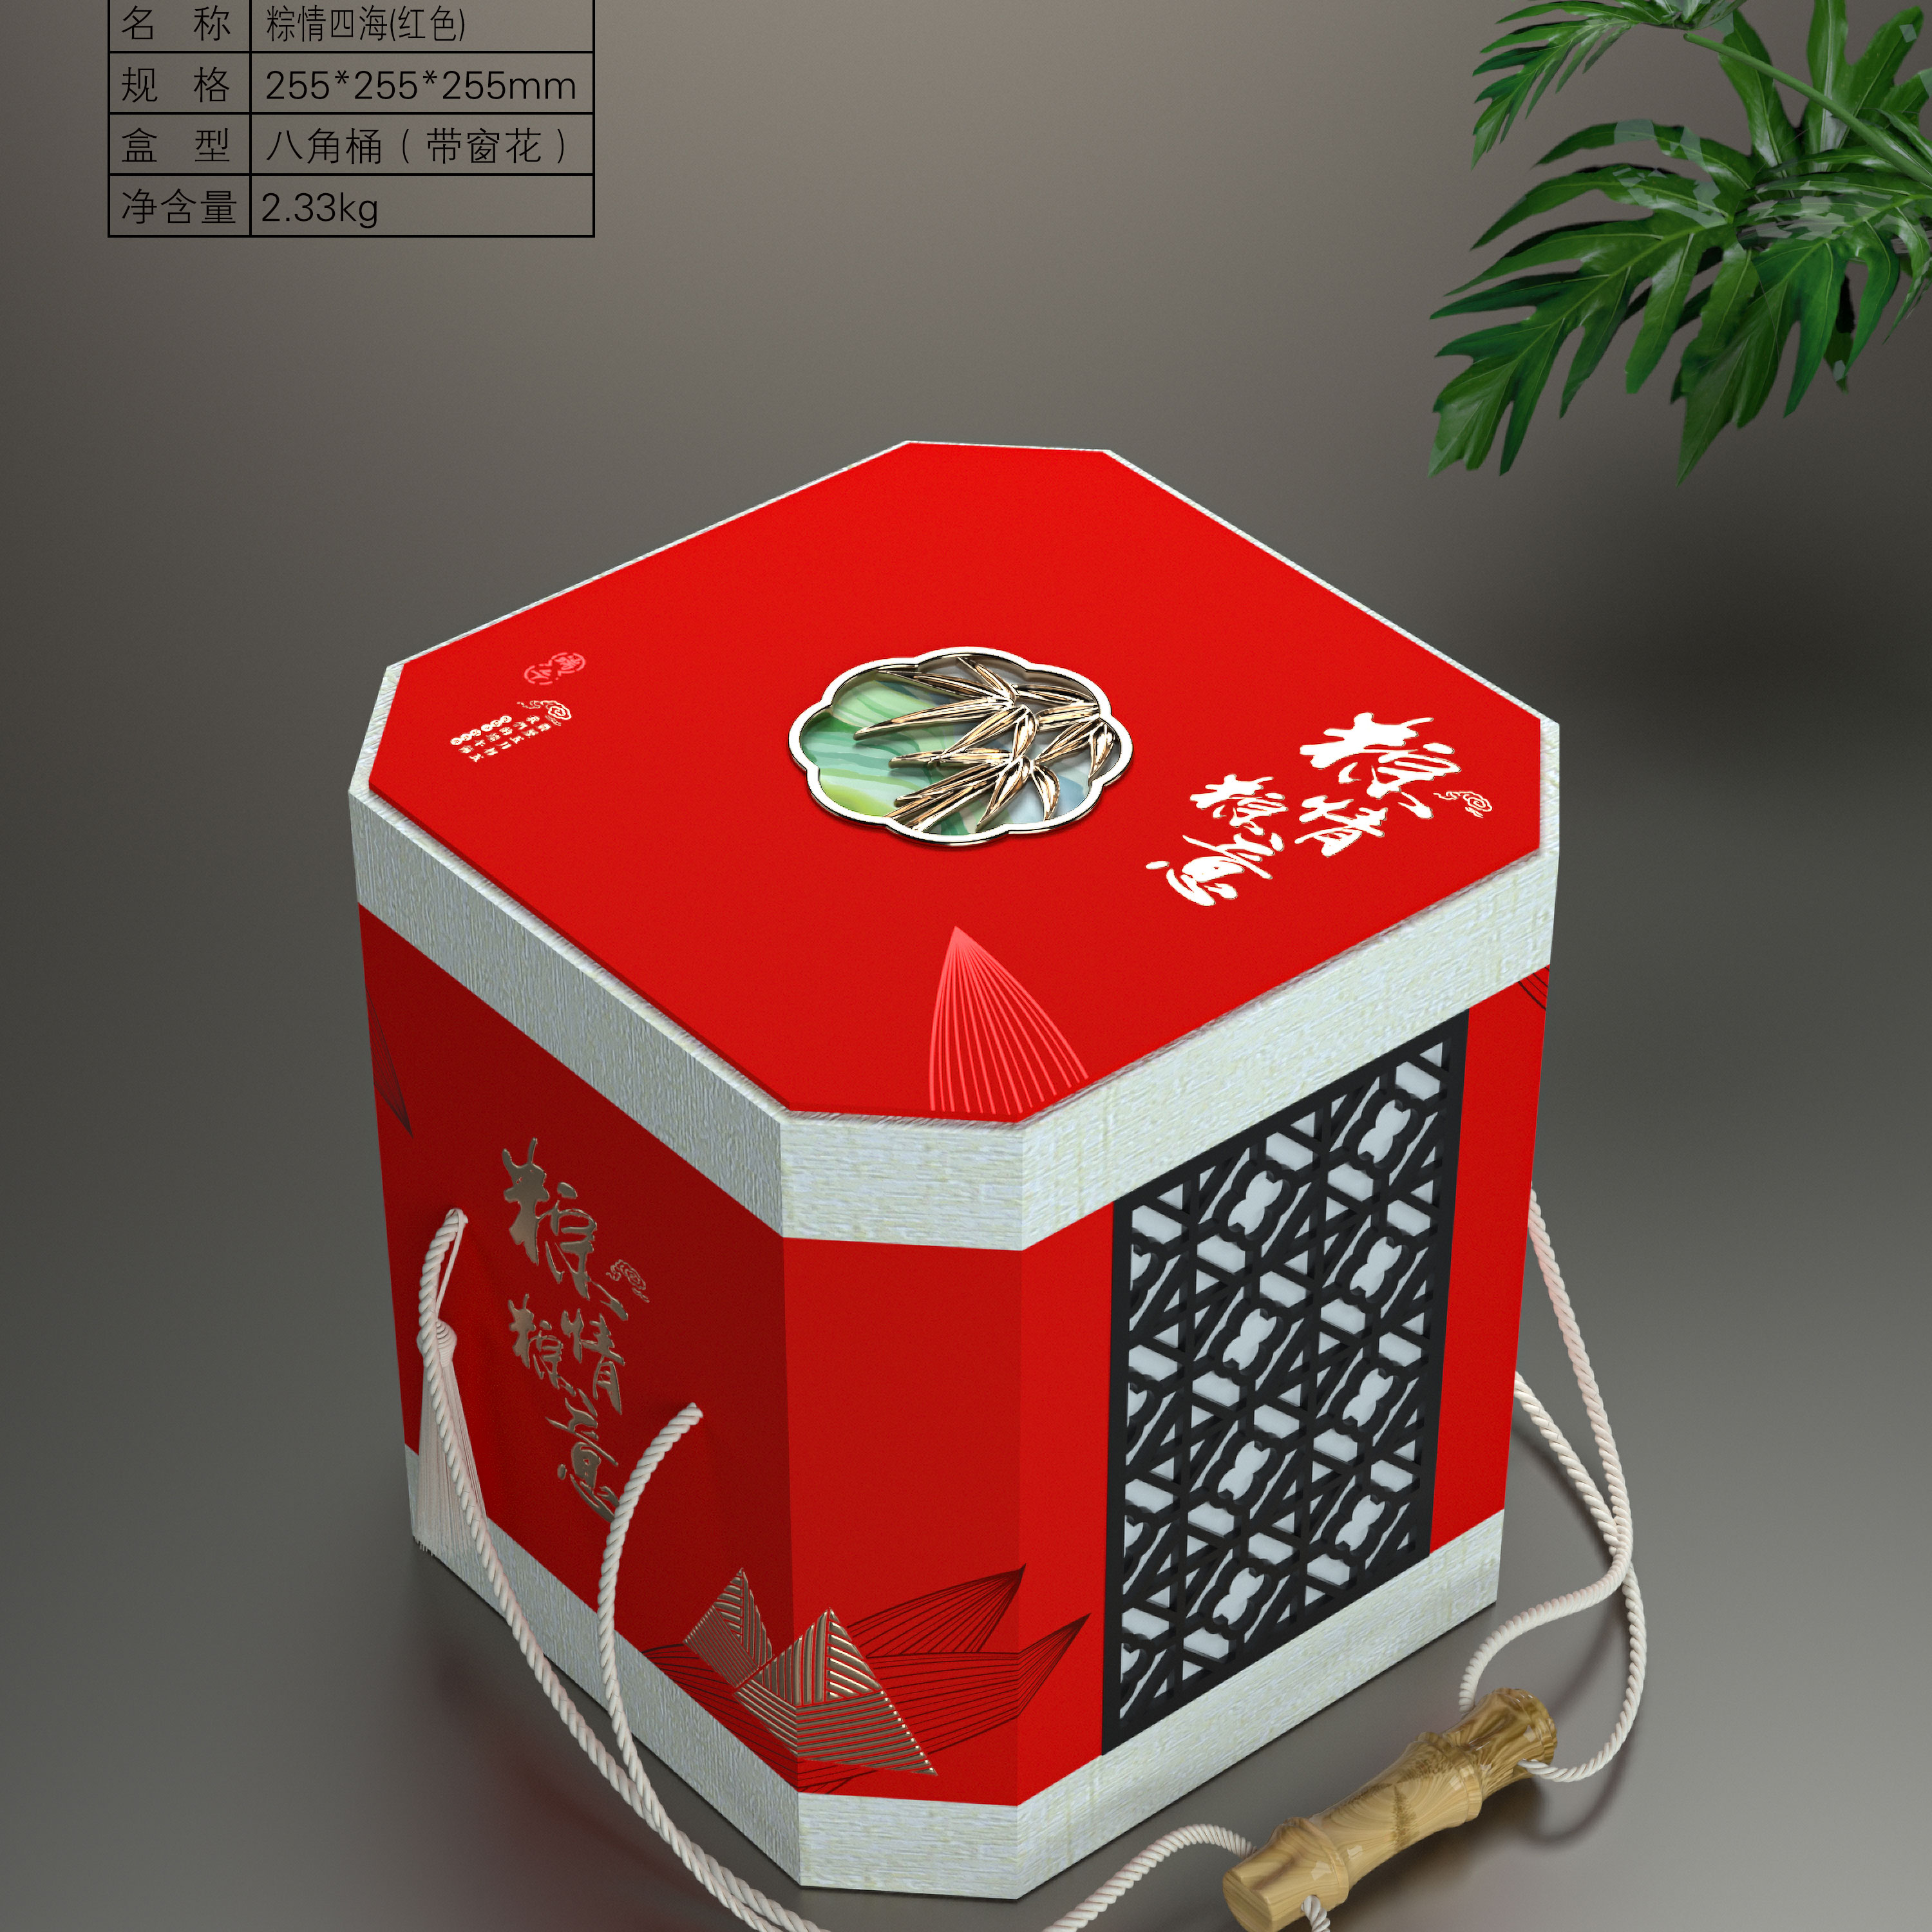 盒定制高端手提创意批发空盒纸盒箱礼品外包装 端午粽子盒礼盒包装